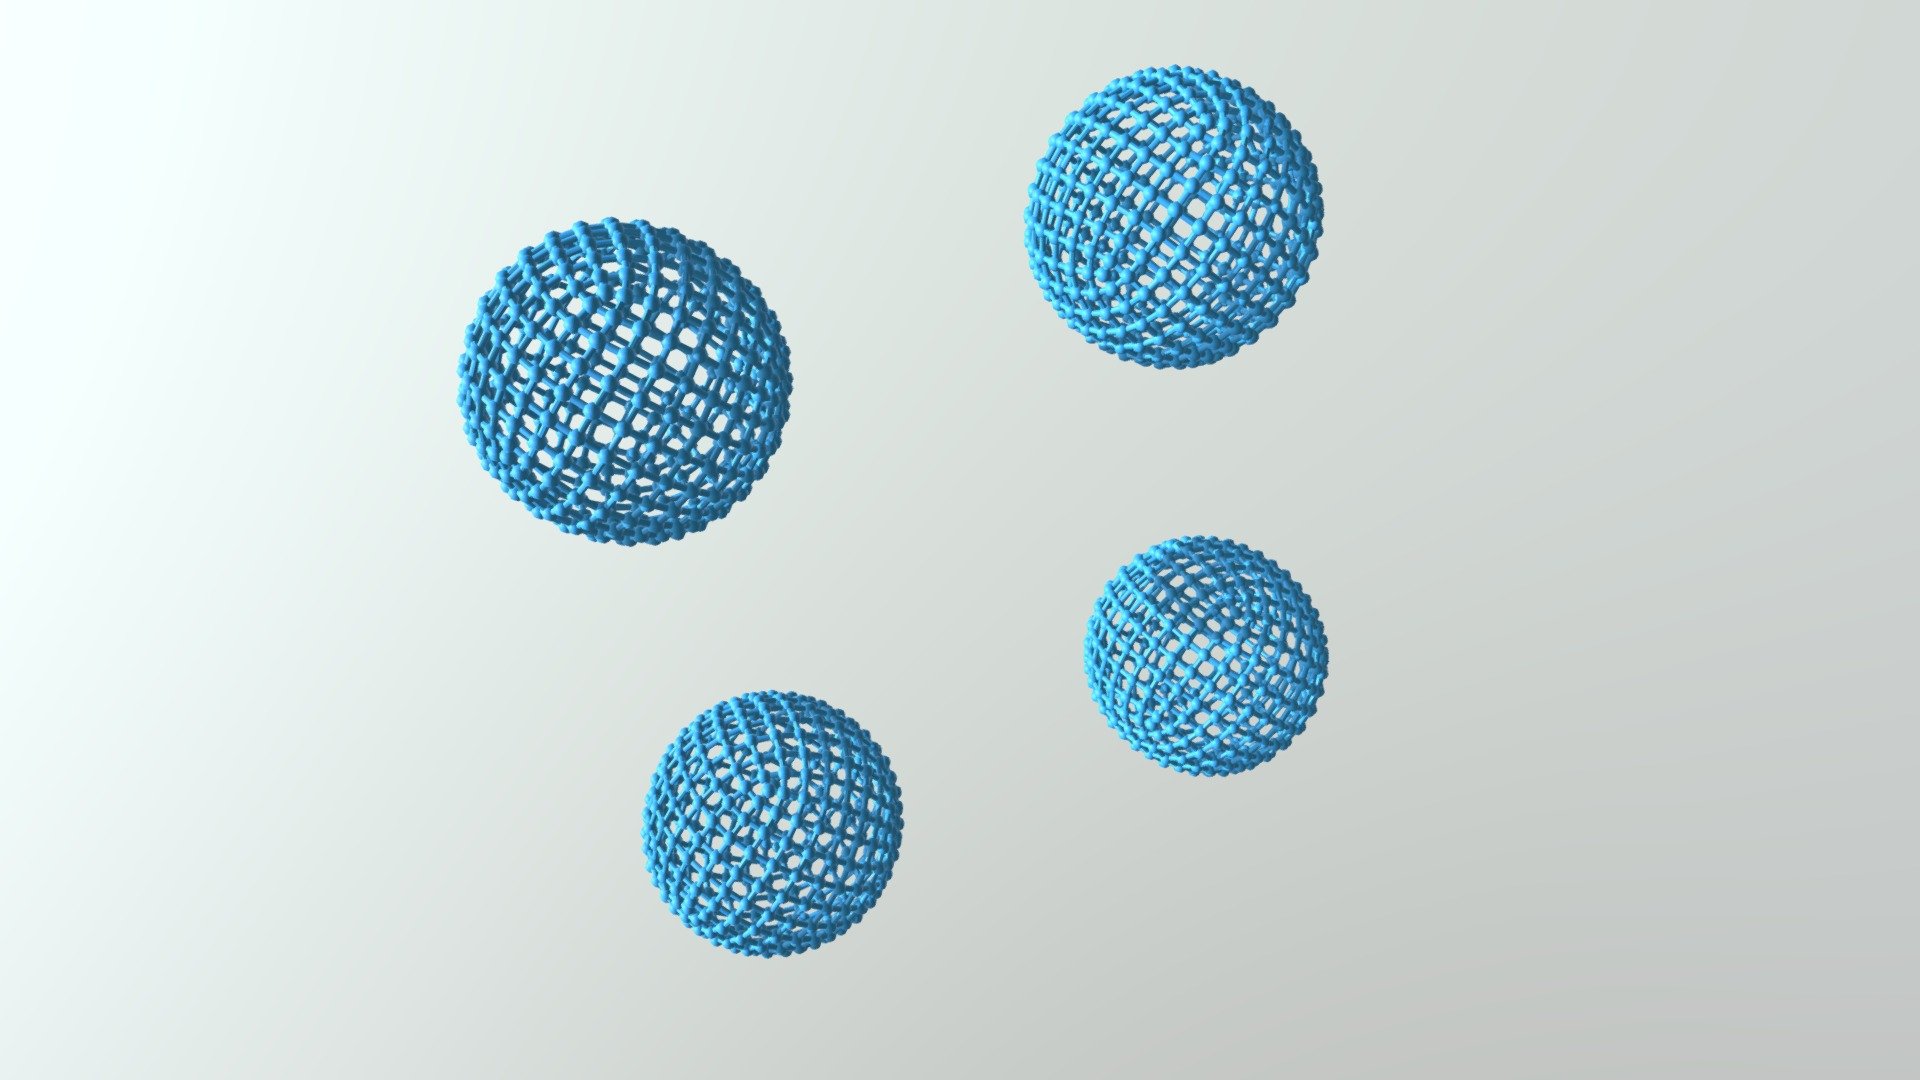 108-03-16-3d atoms balls